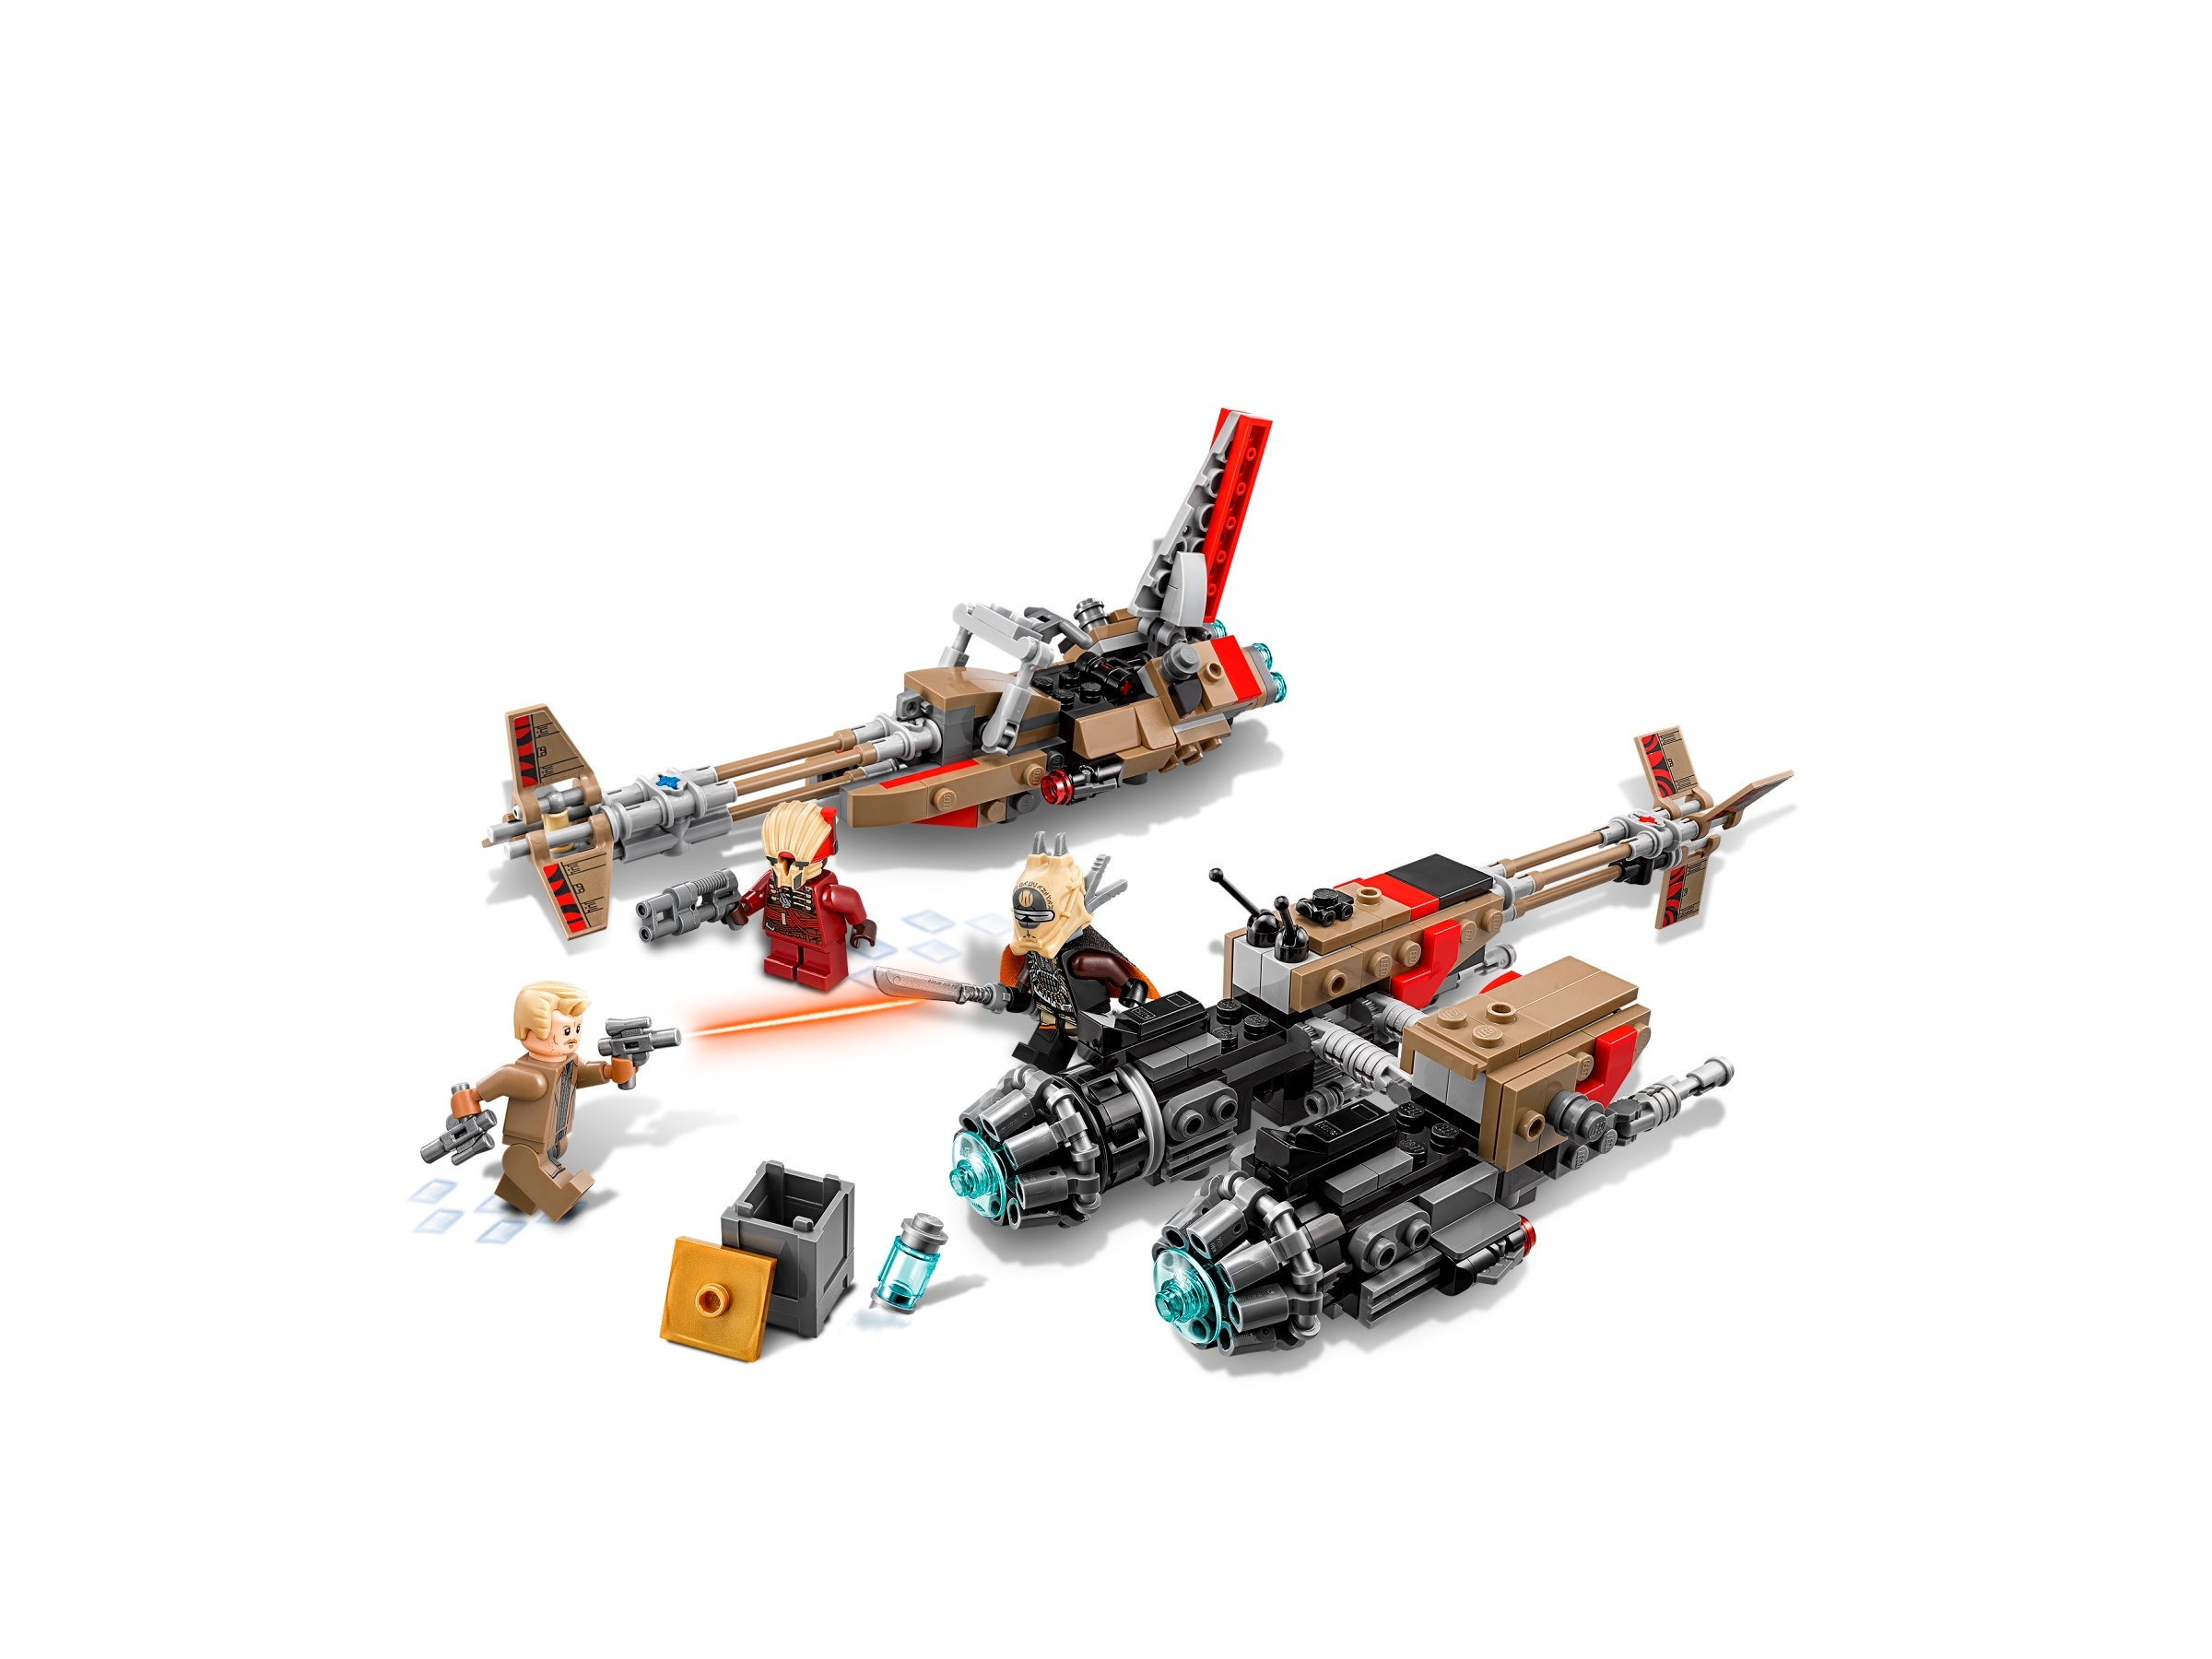 CLOUD RIDER WEAZEL FIGURE GIFT FAST 75215-2019 LEGO STAR WARS NEW 